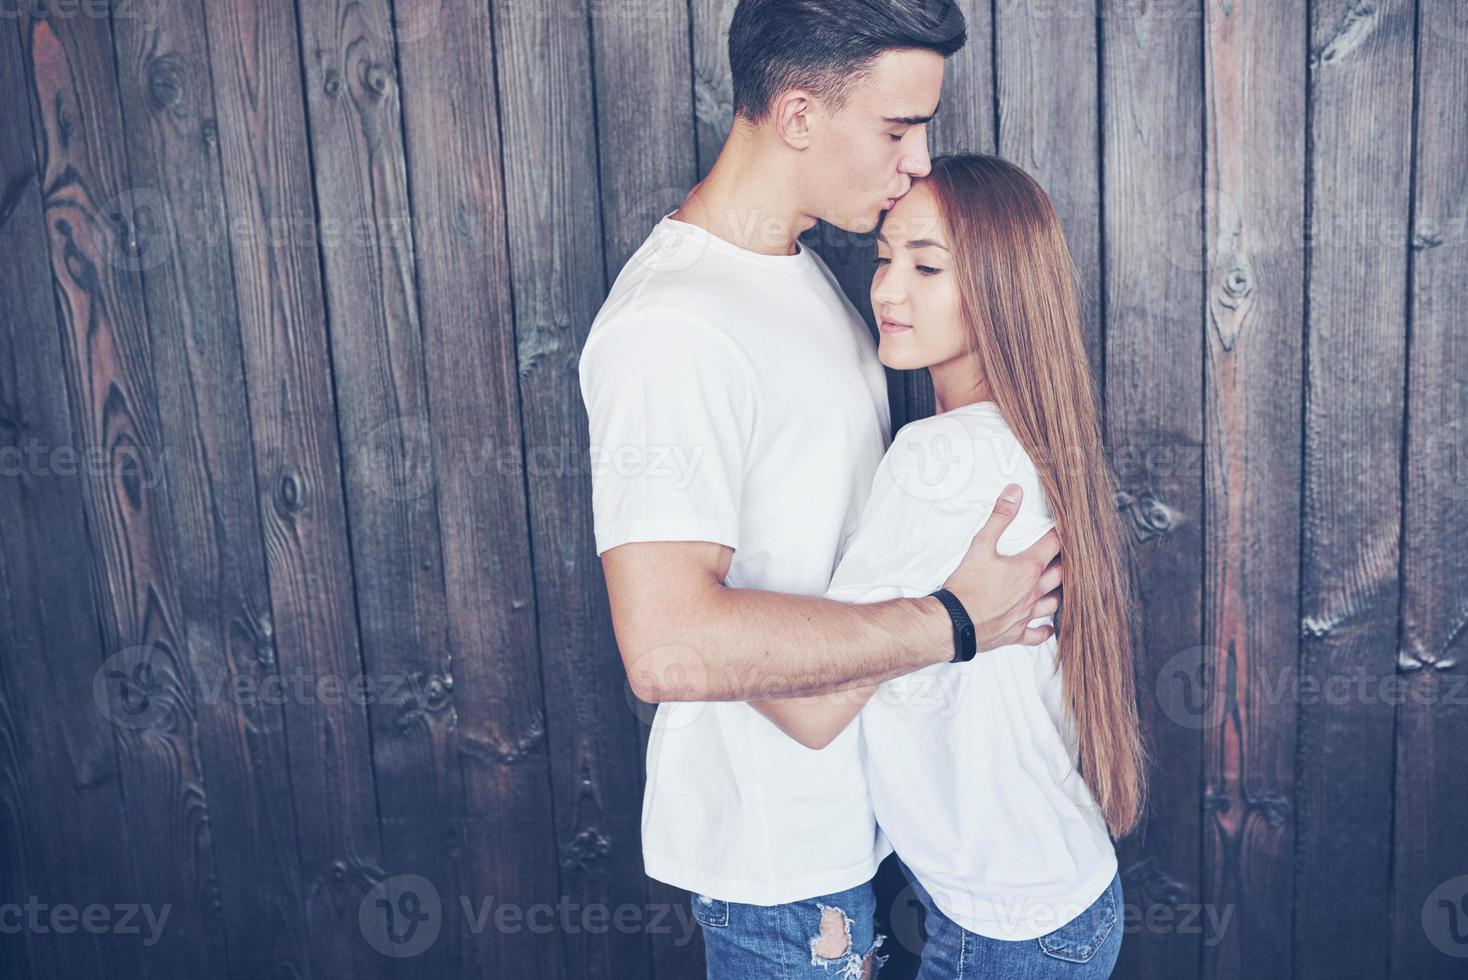 giovane coppia, ragazzo e ragazza insieme su uno sfondo di parete in legno. sono felici insieme e vestiti allo stesso modo. sempre di tendenza foto